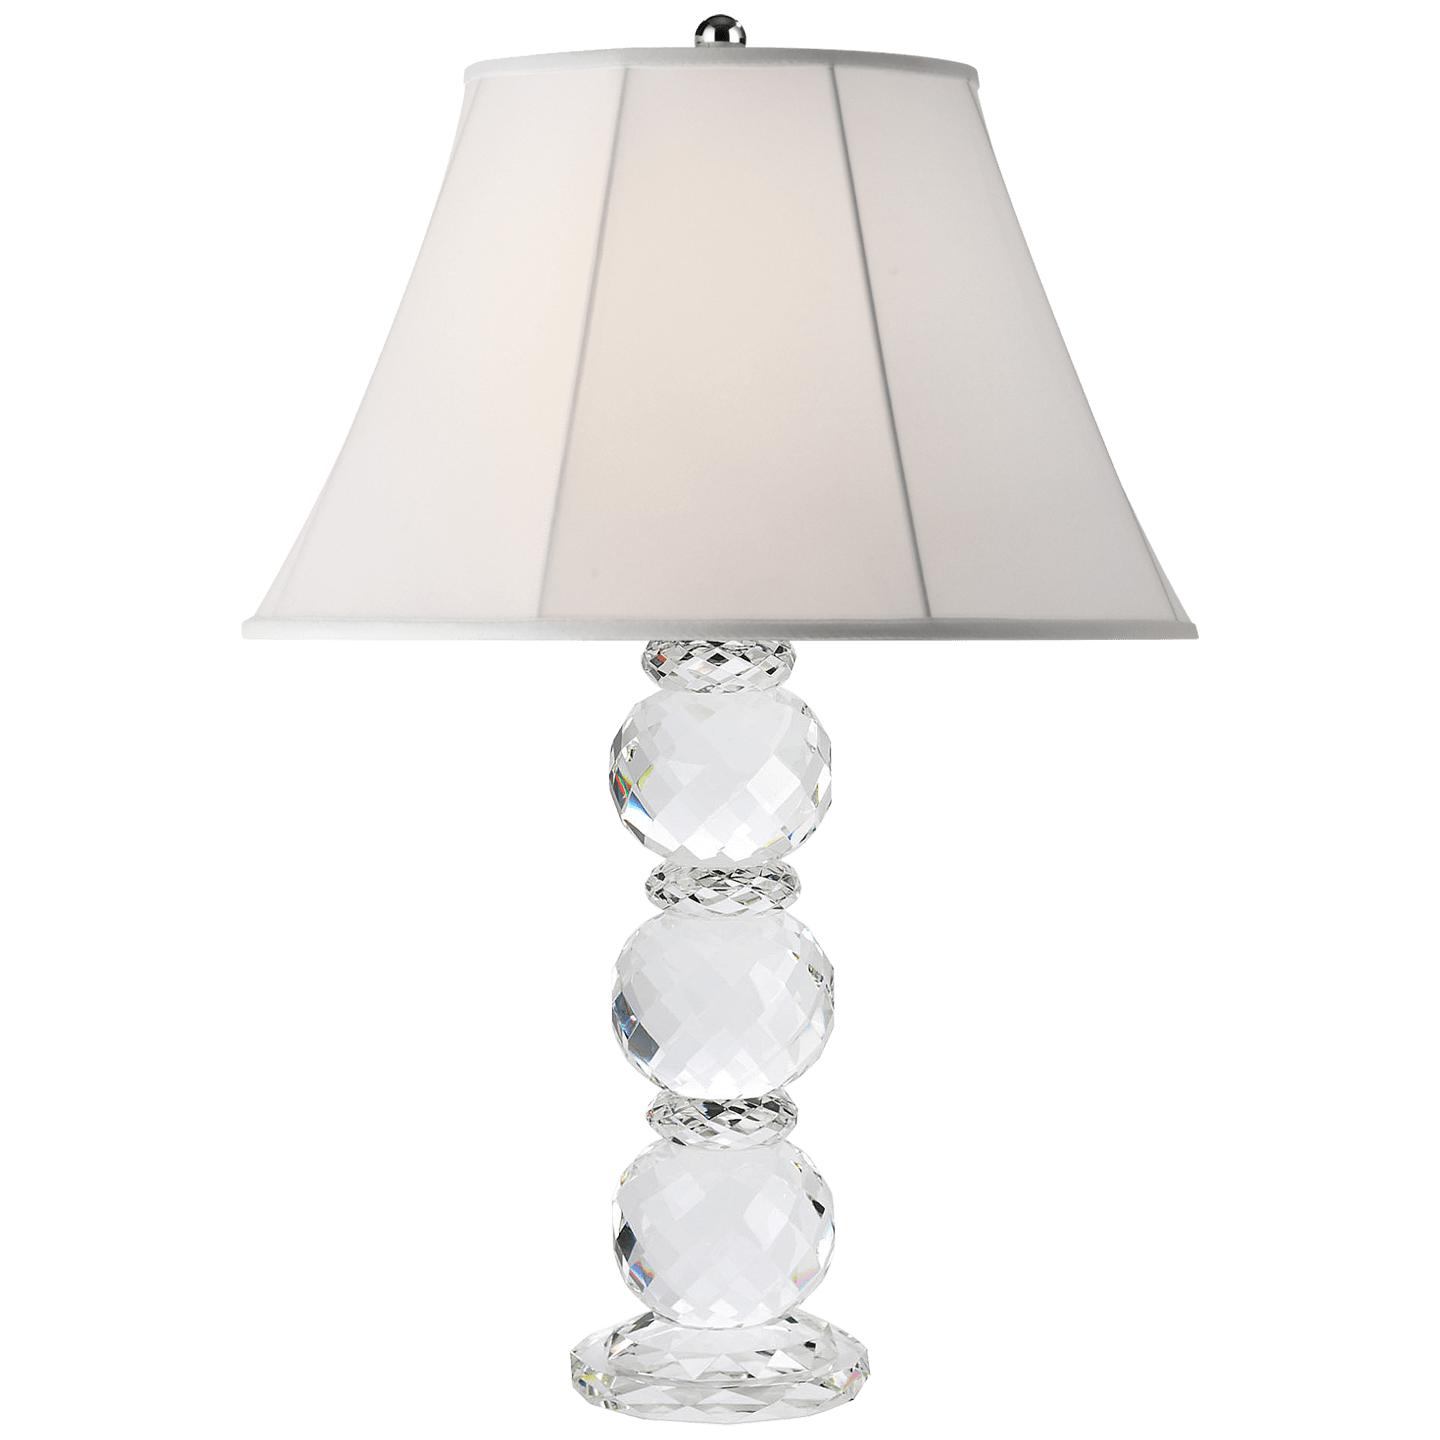 Купить Настольная лампа Daniela Table Lamp в интернет-магазине roooms.ru